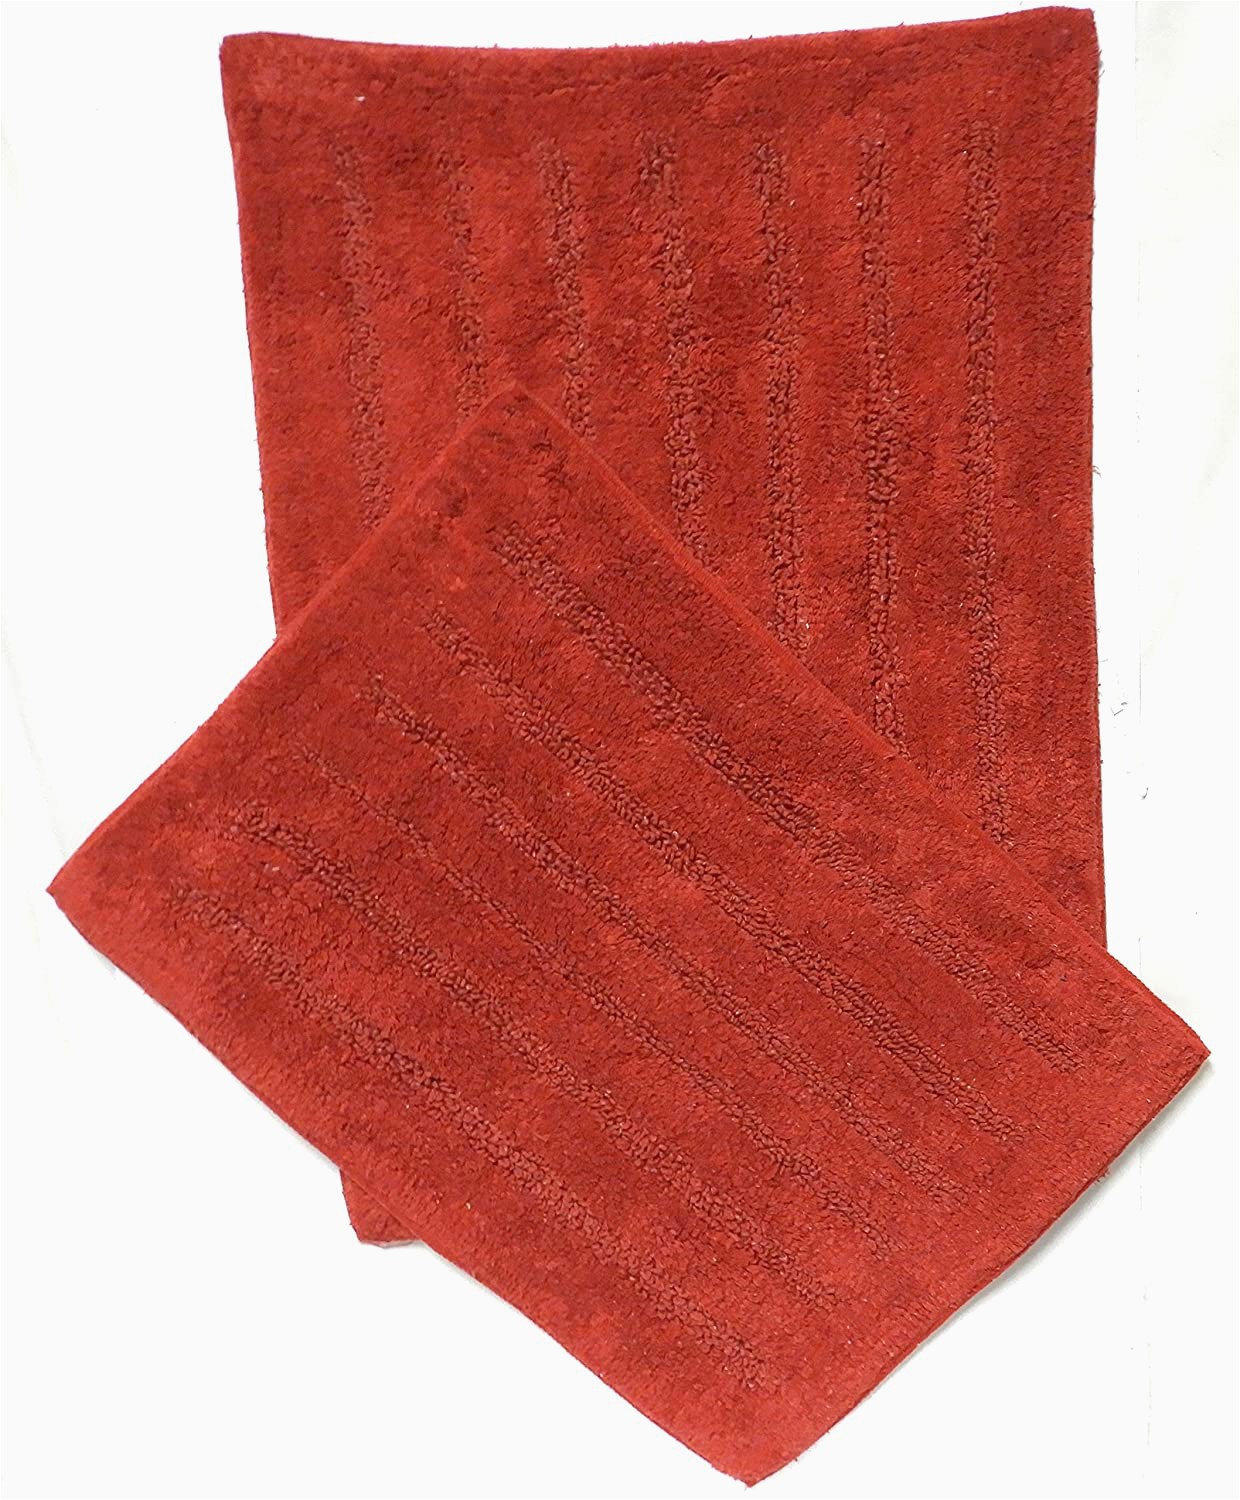 Dark Red Bath Rugs Buy 2 Piece Cotton Bath Rug Set Bathroom Mat Ultra